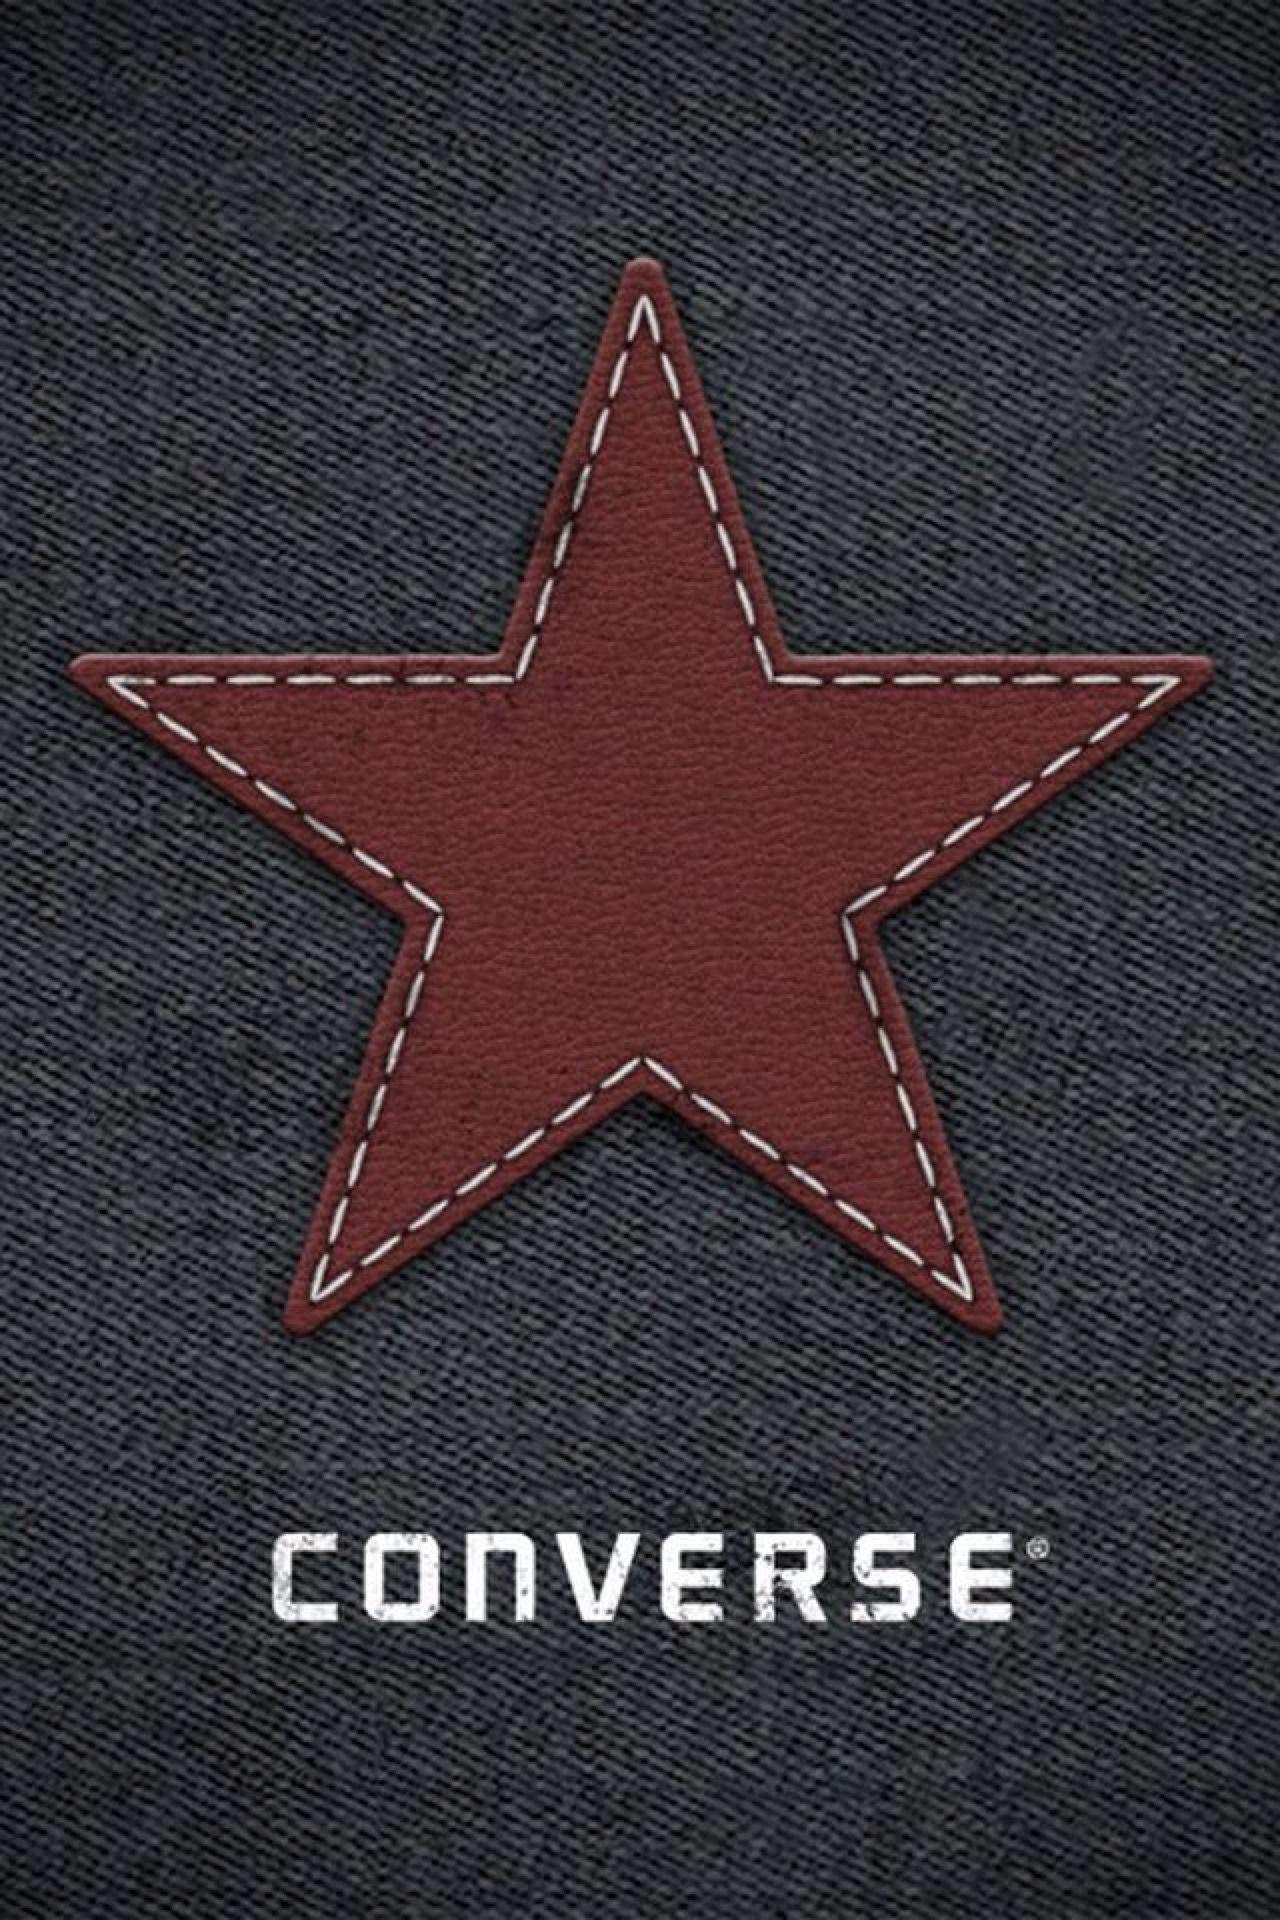 converse logo mobile wallpaper